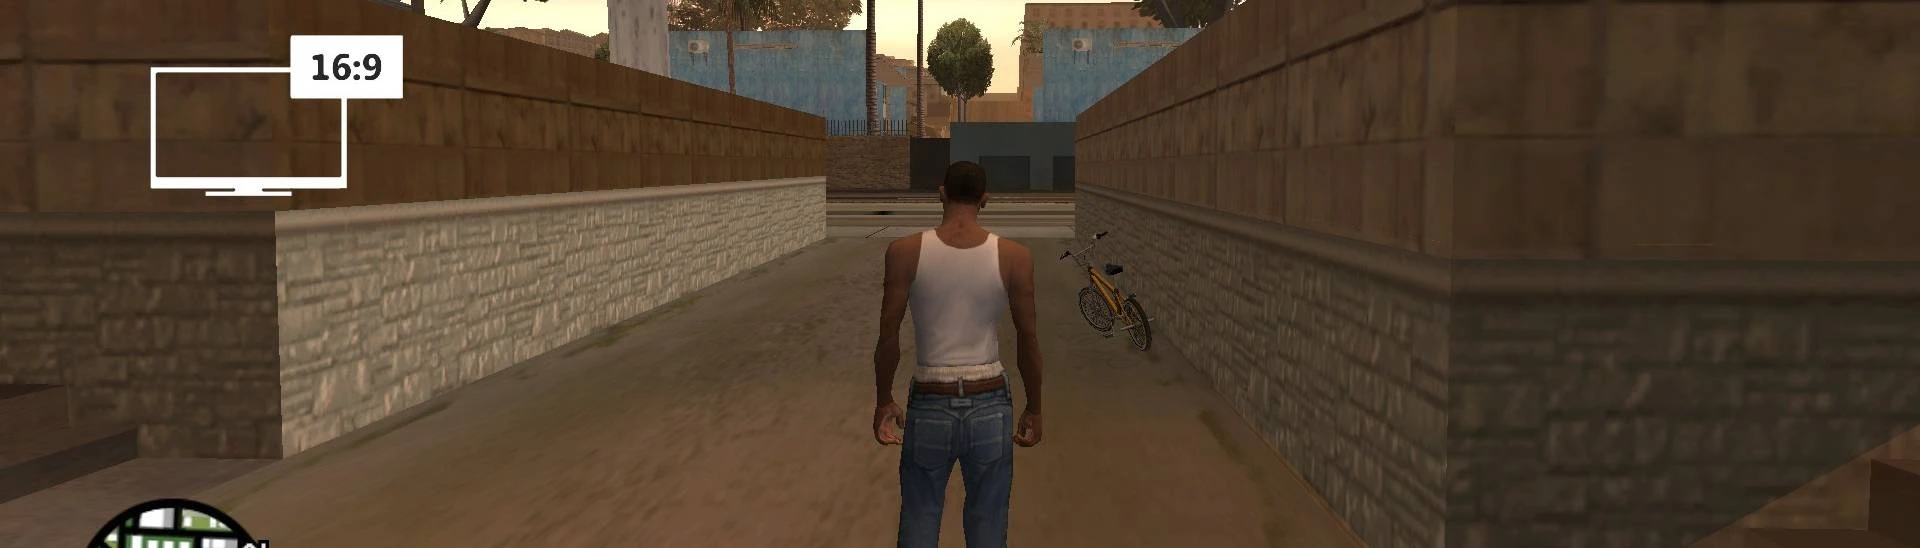 GTA San Andreas screen resolution fix